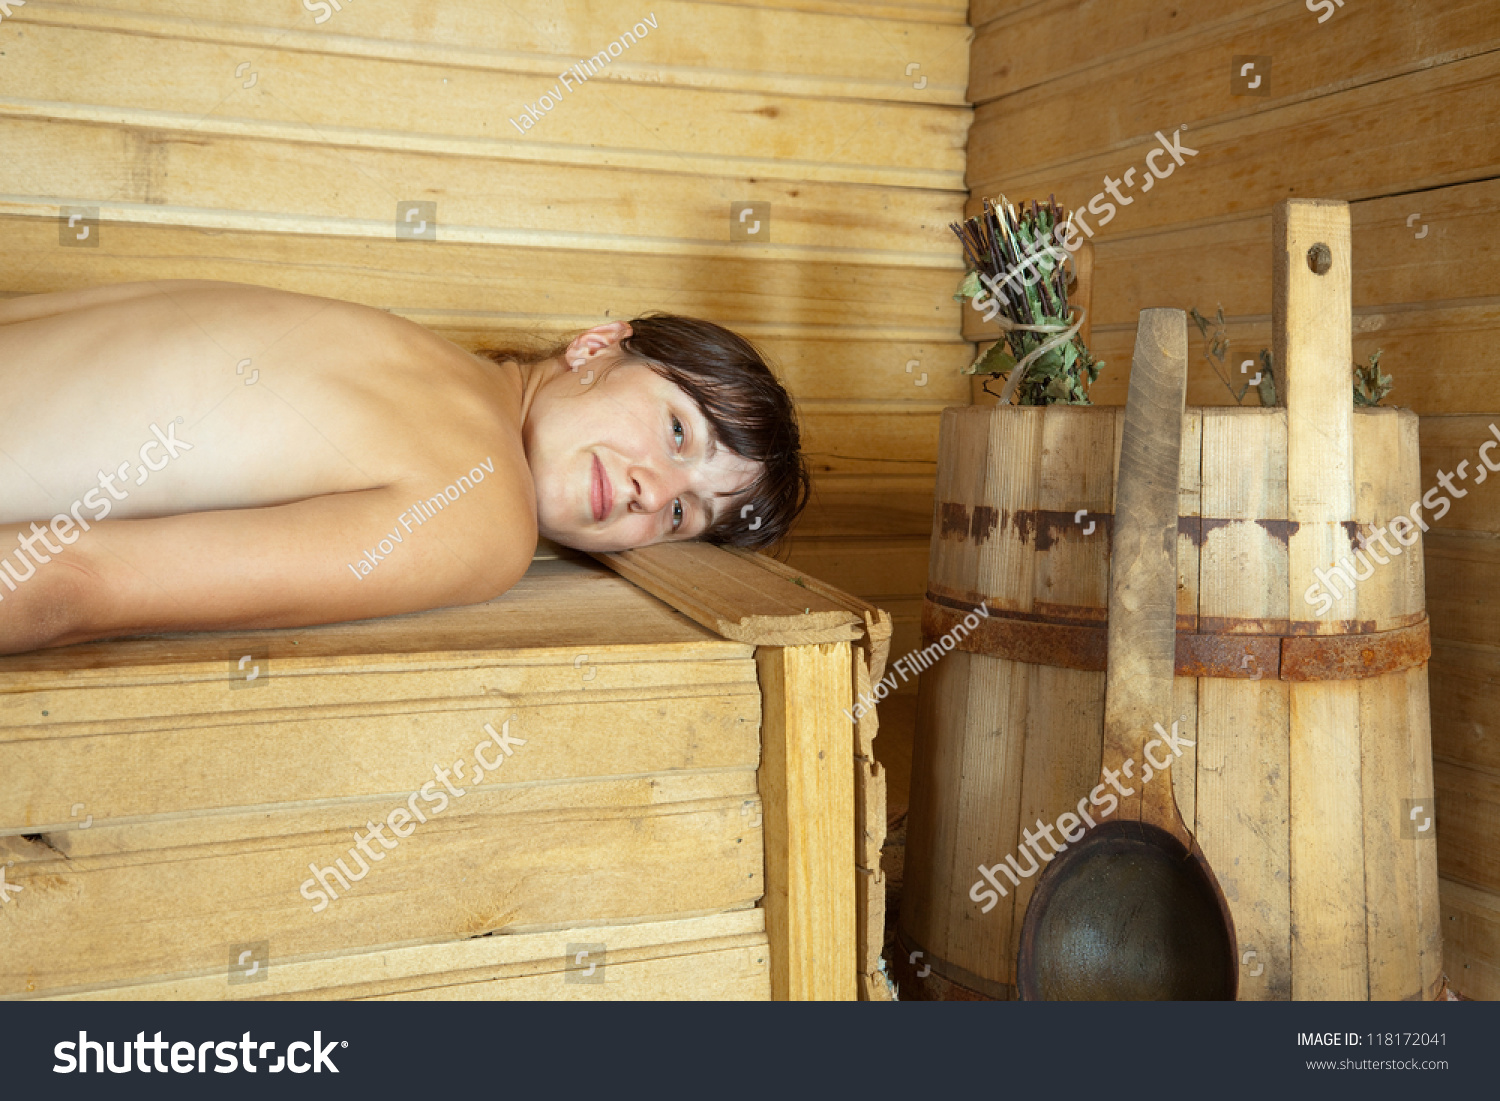 как купаться в бани голыми с детьми фото 23